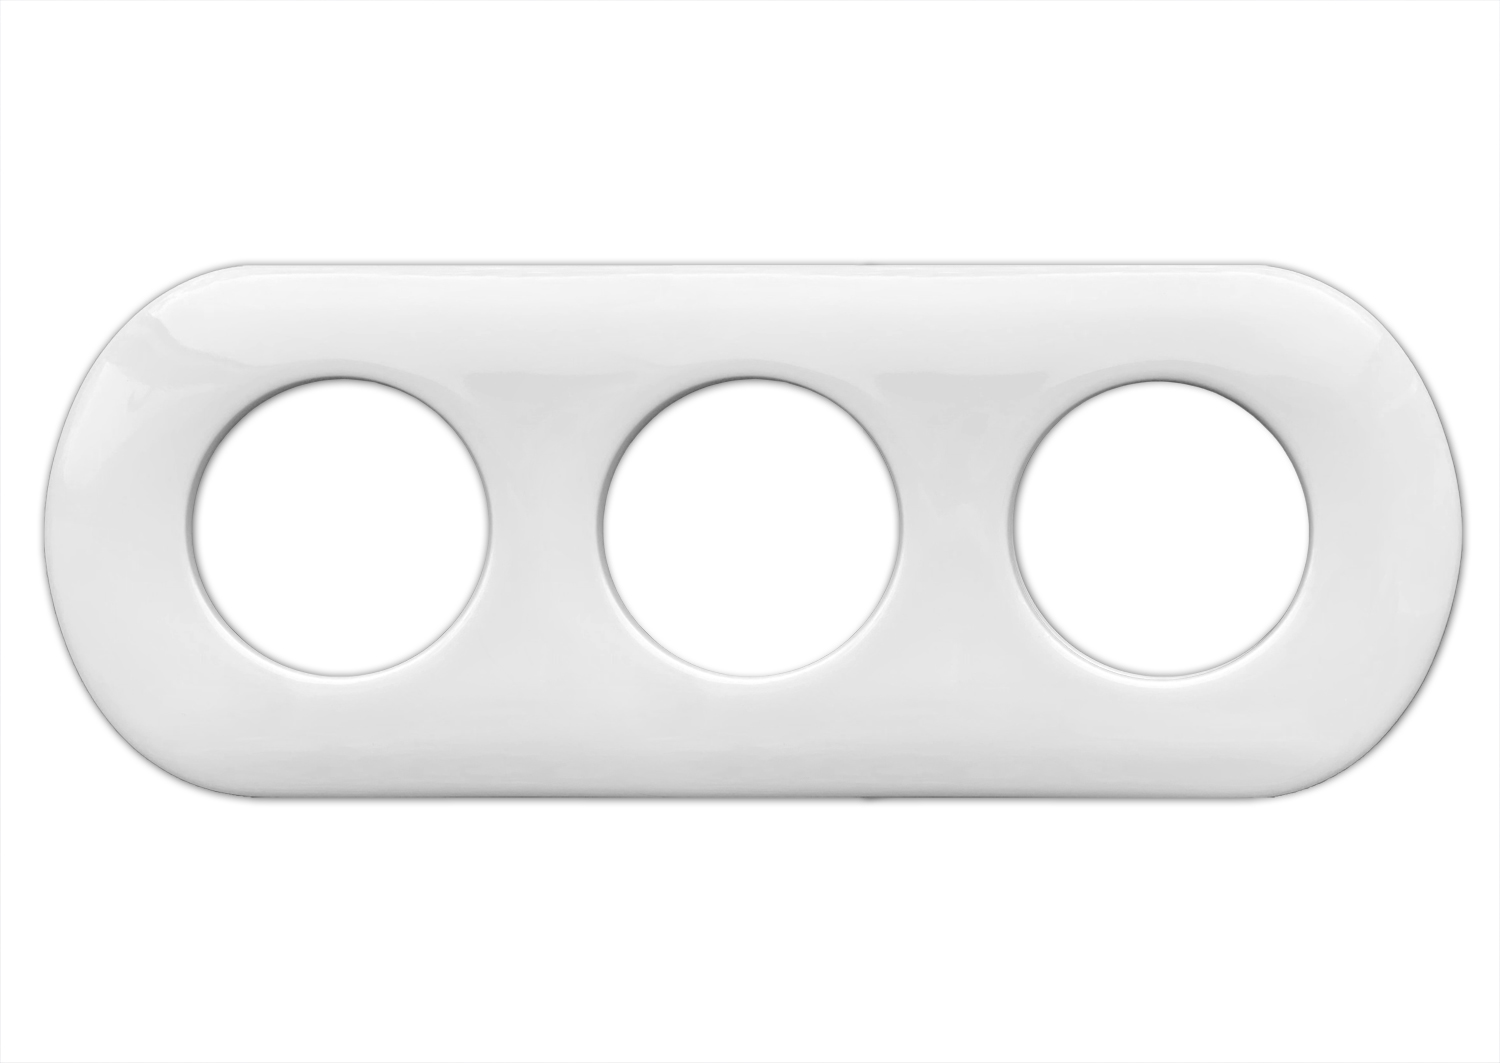 Porcelain light switch frame, socket frame. 3-fold. White.